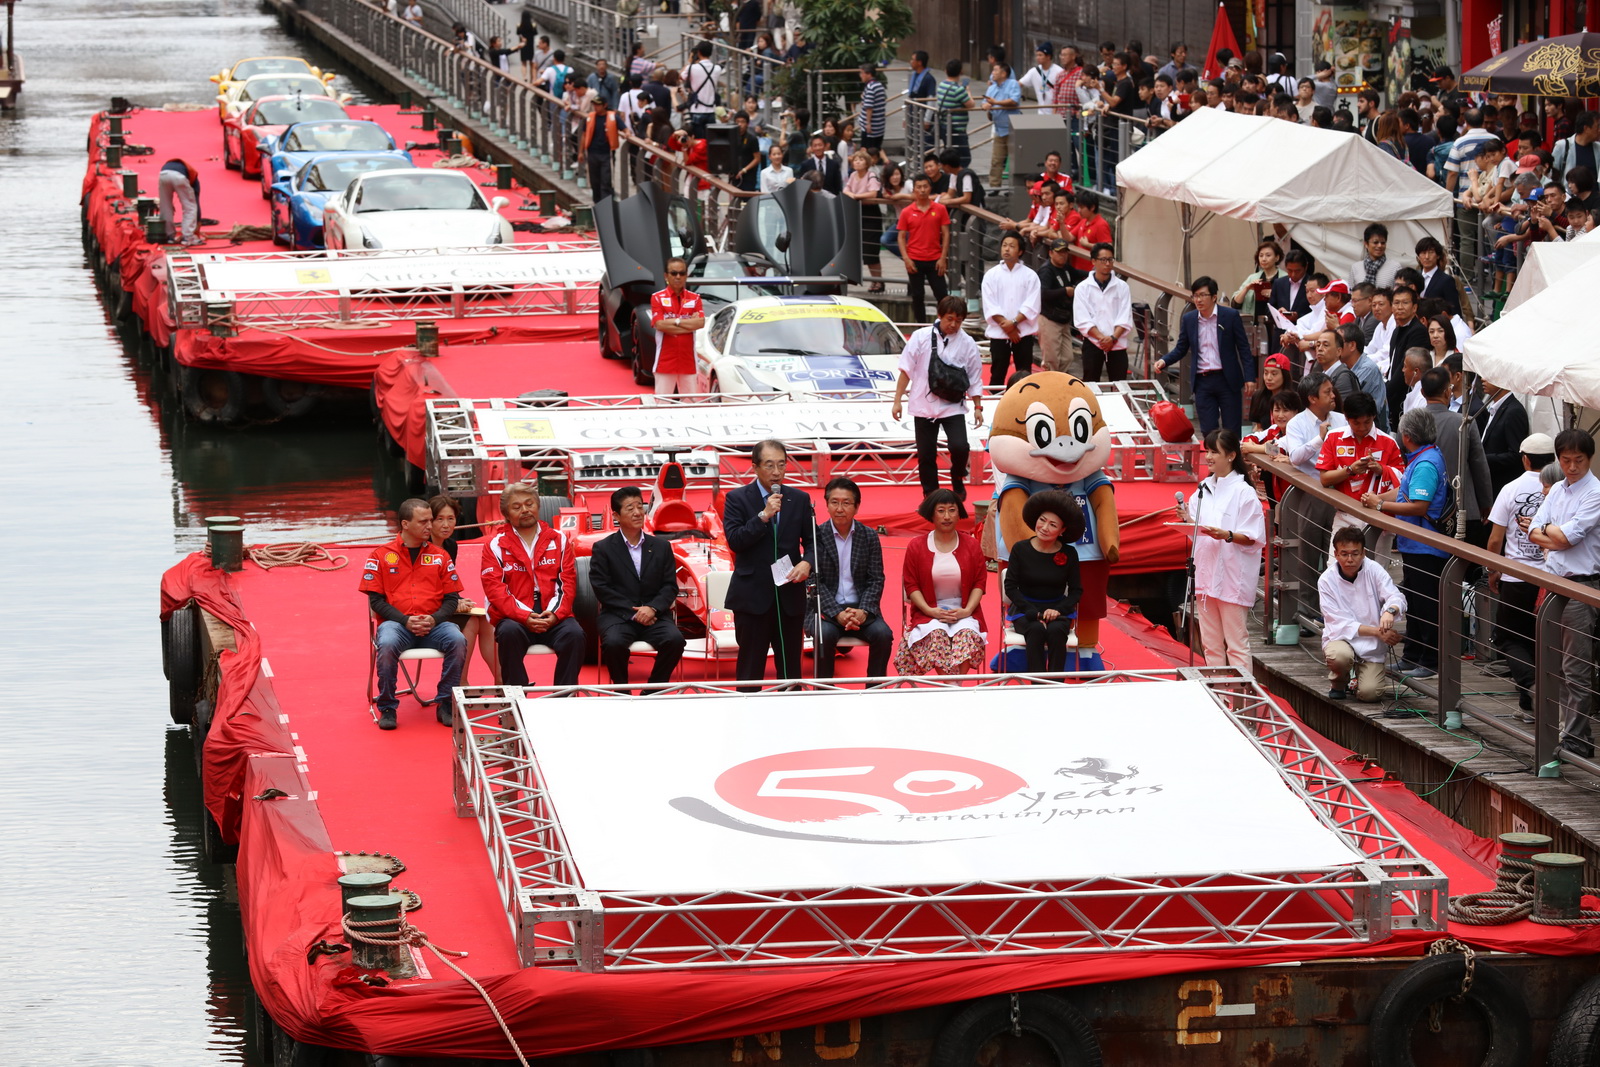 ذراع “فيراري” اليابانية تحتفل بالذكرى الخمسين لها بمهرجان نهري Ferrari